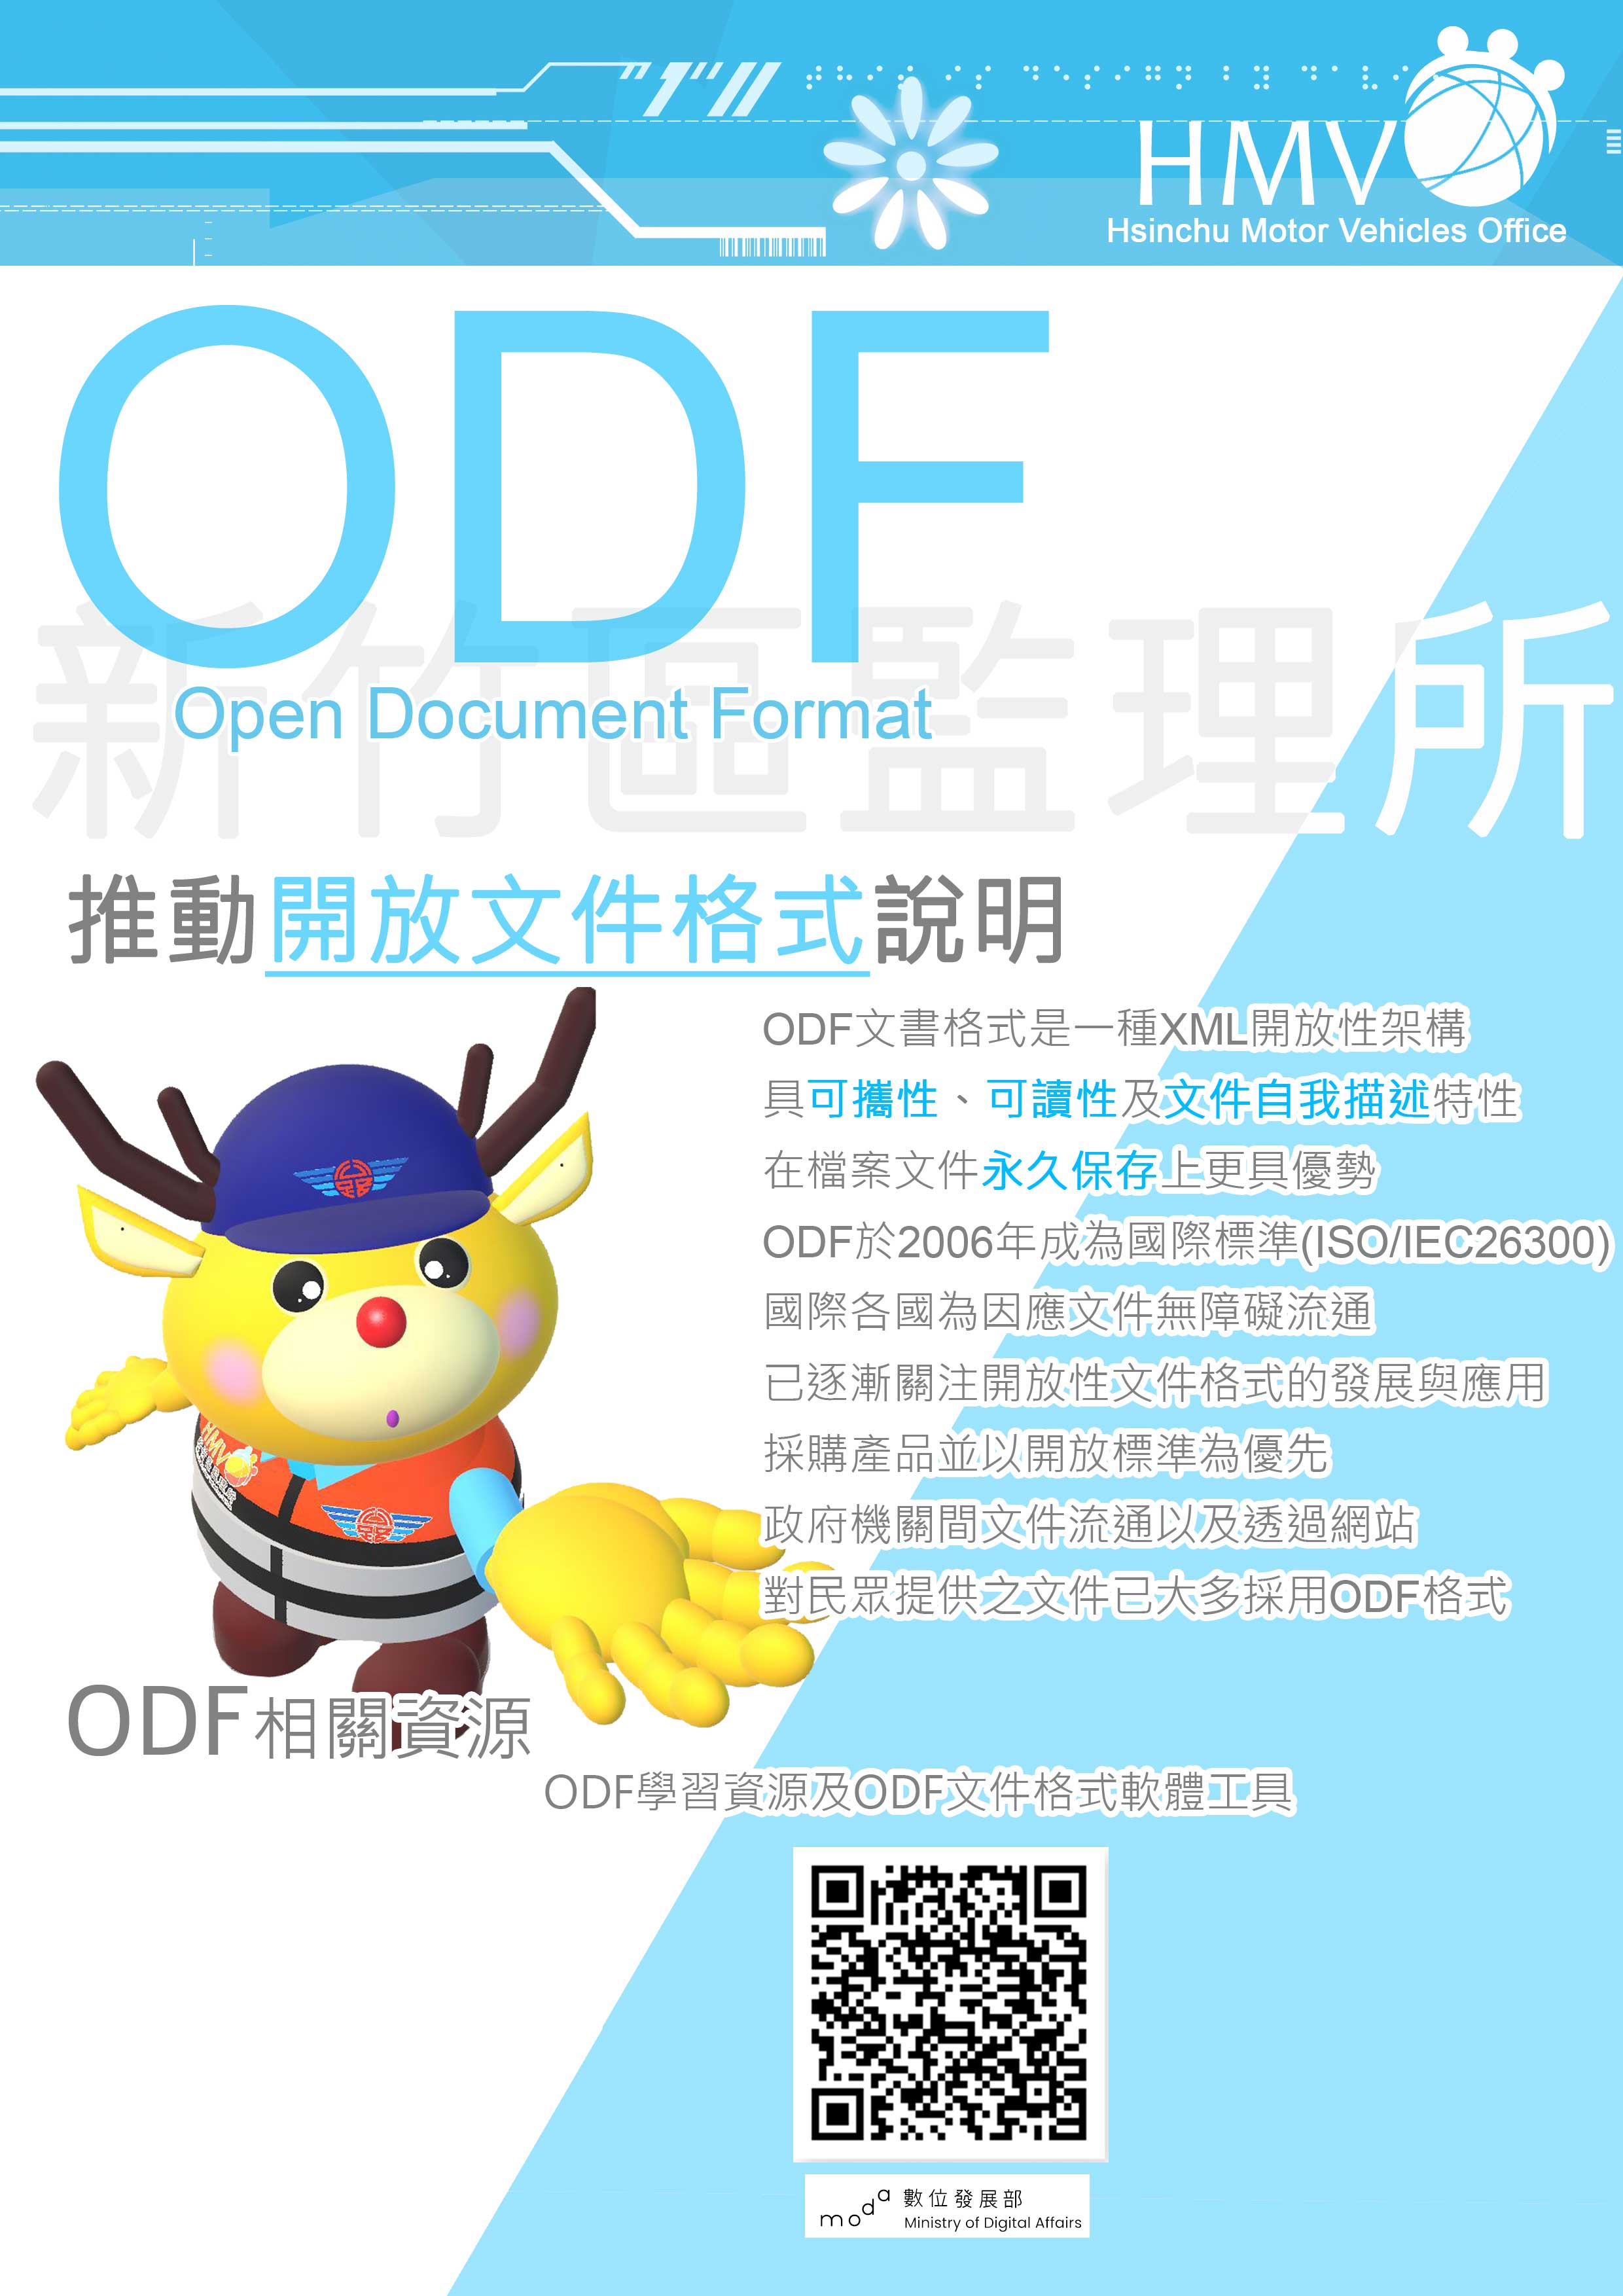 推動開放文件格式:ODF是XML開放性架構具可攜性可讀性及文件自我描述性在檔案永久保存上具優勢ODF於2006年成為國際標準(ISO/IEC26300)國際為因應文件無障礙均關注開放文件格式發展與應用採購開放標準感品優先政府機關文件流通及網站提供文件多採用ODF格式